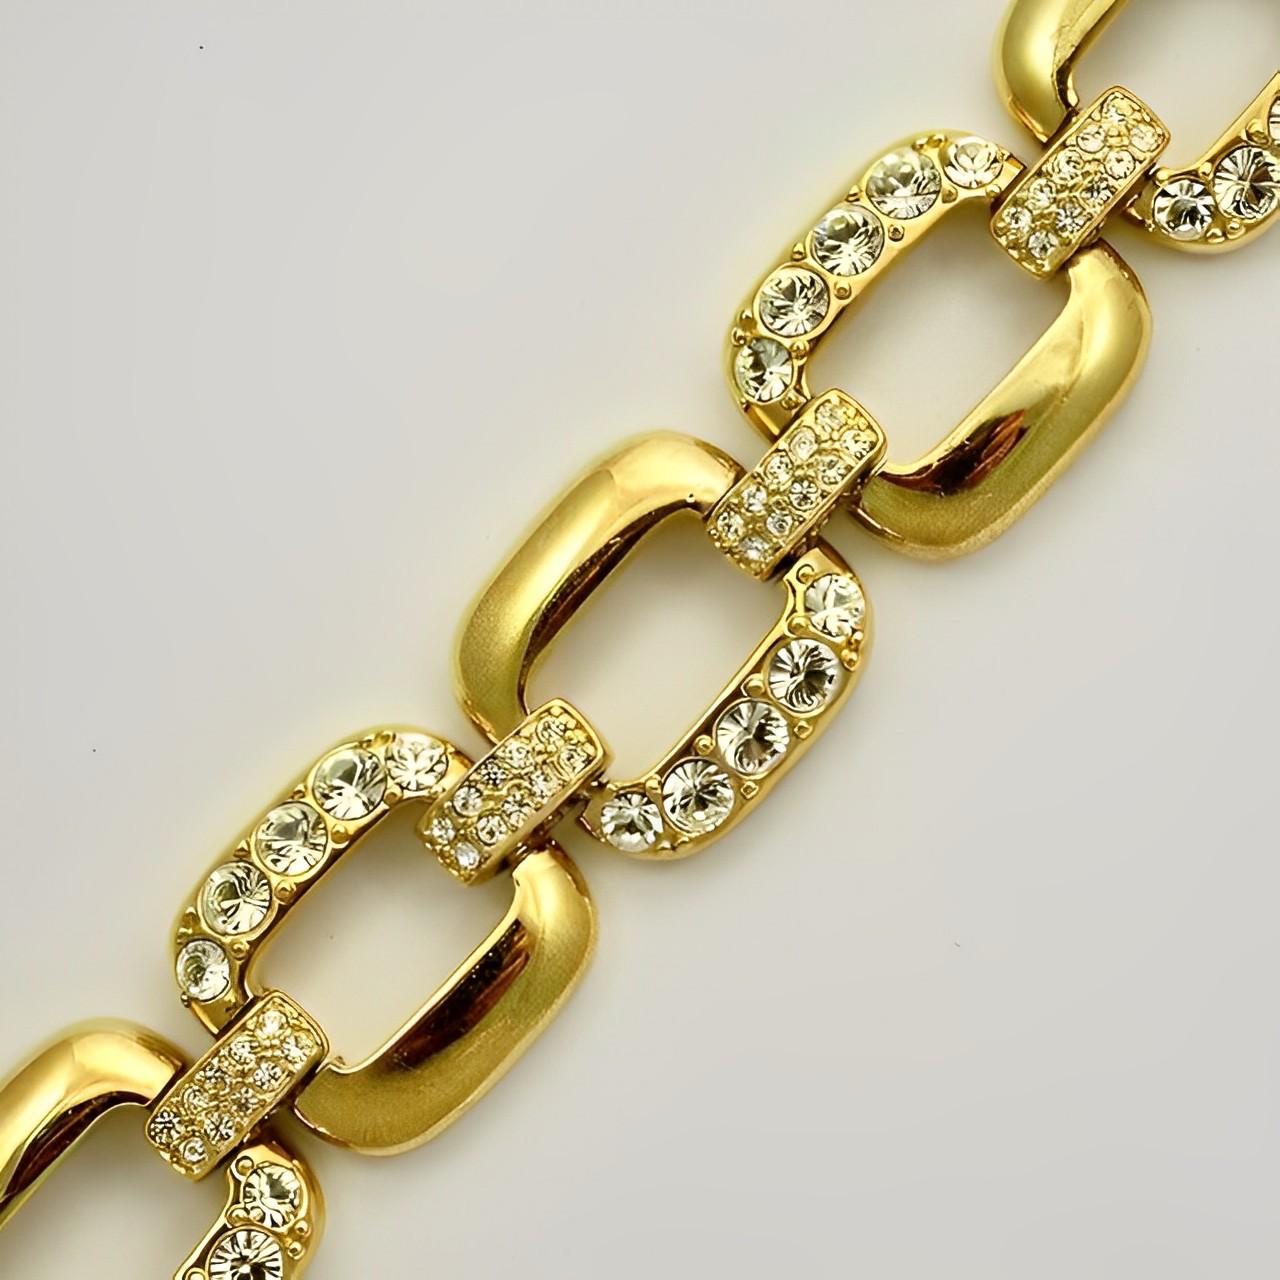 Glamouröses vergoldetes breites Gliederarmband mit Kristallen besetzt. Länge 19,6 cm / 7,7 Zoll und Breite 2,4 cm / .9 Zoll. Das Armband hat einige Kratzer wie erwartet.

Dieses schöne Armband stammt aus den 1980er Jahren.